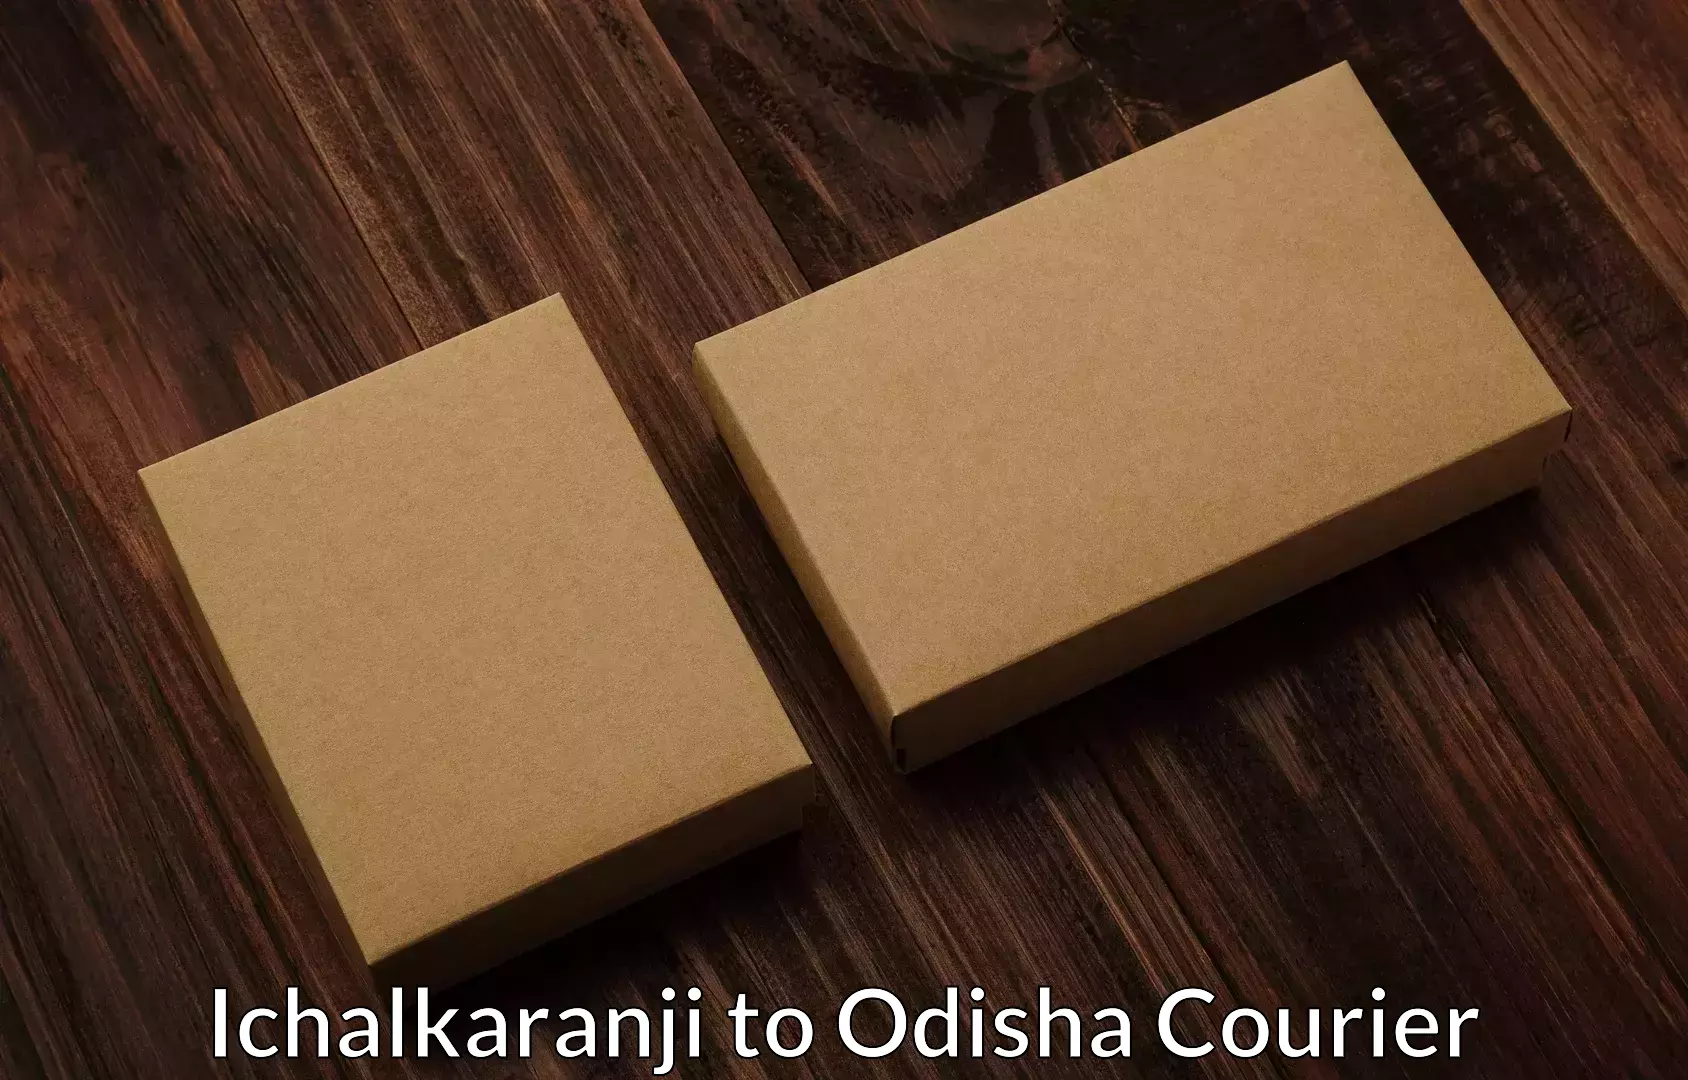 Furniture delivery service Ichalkaranji to Balijhari